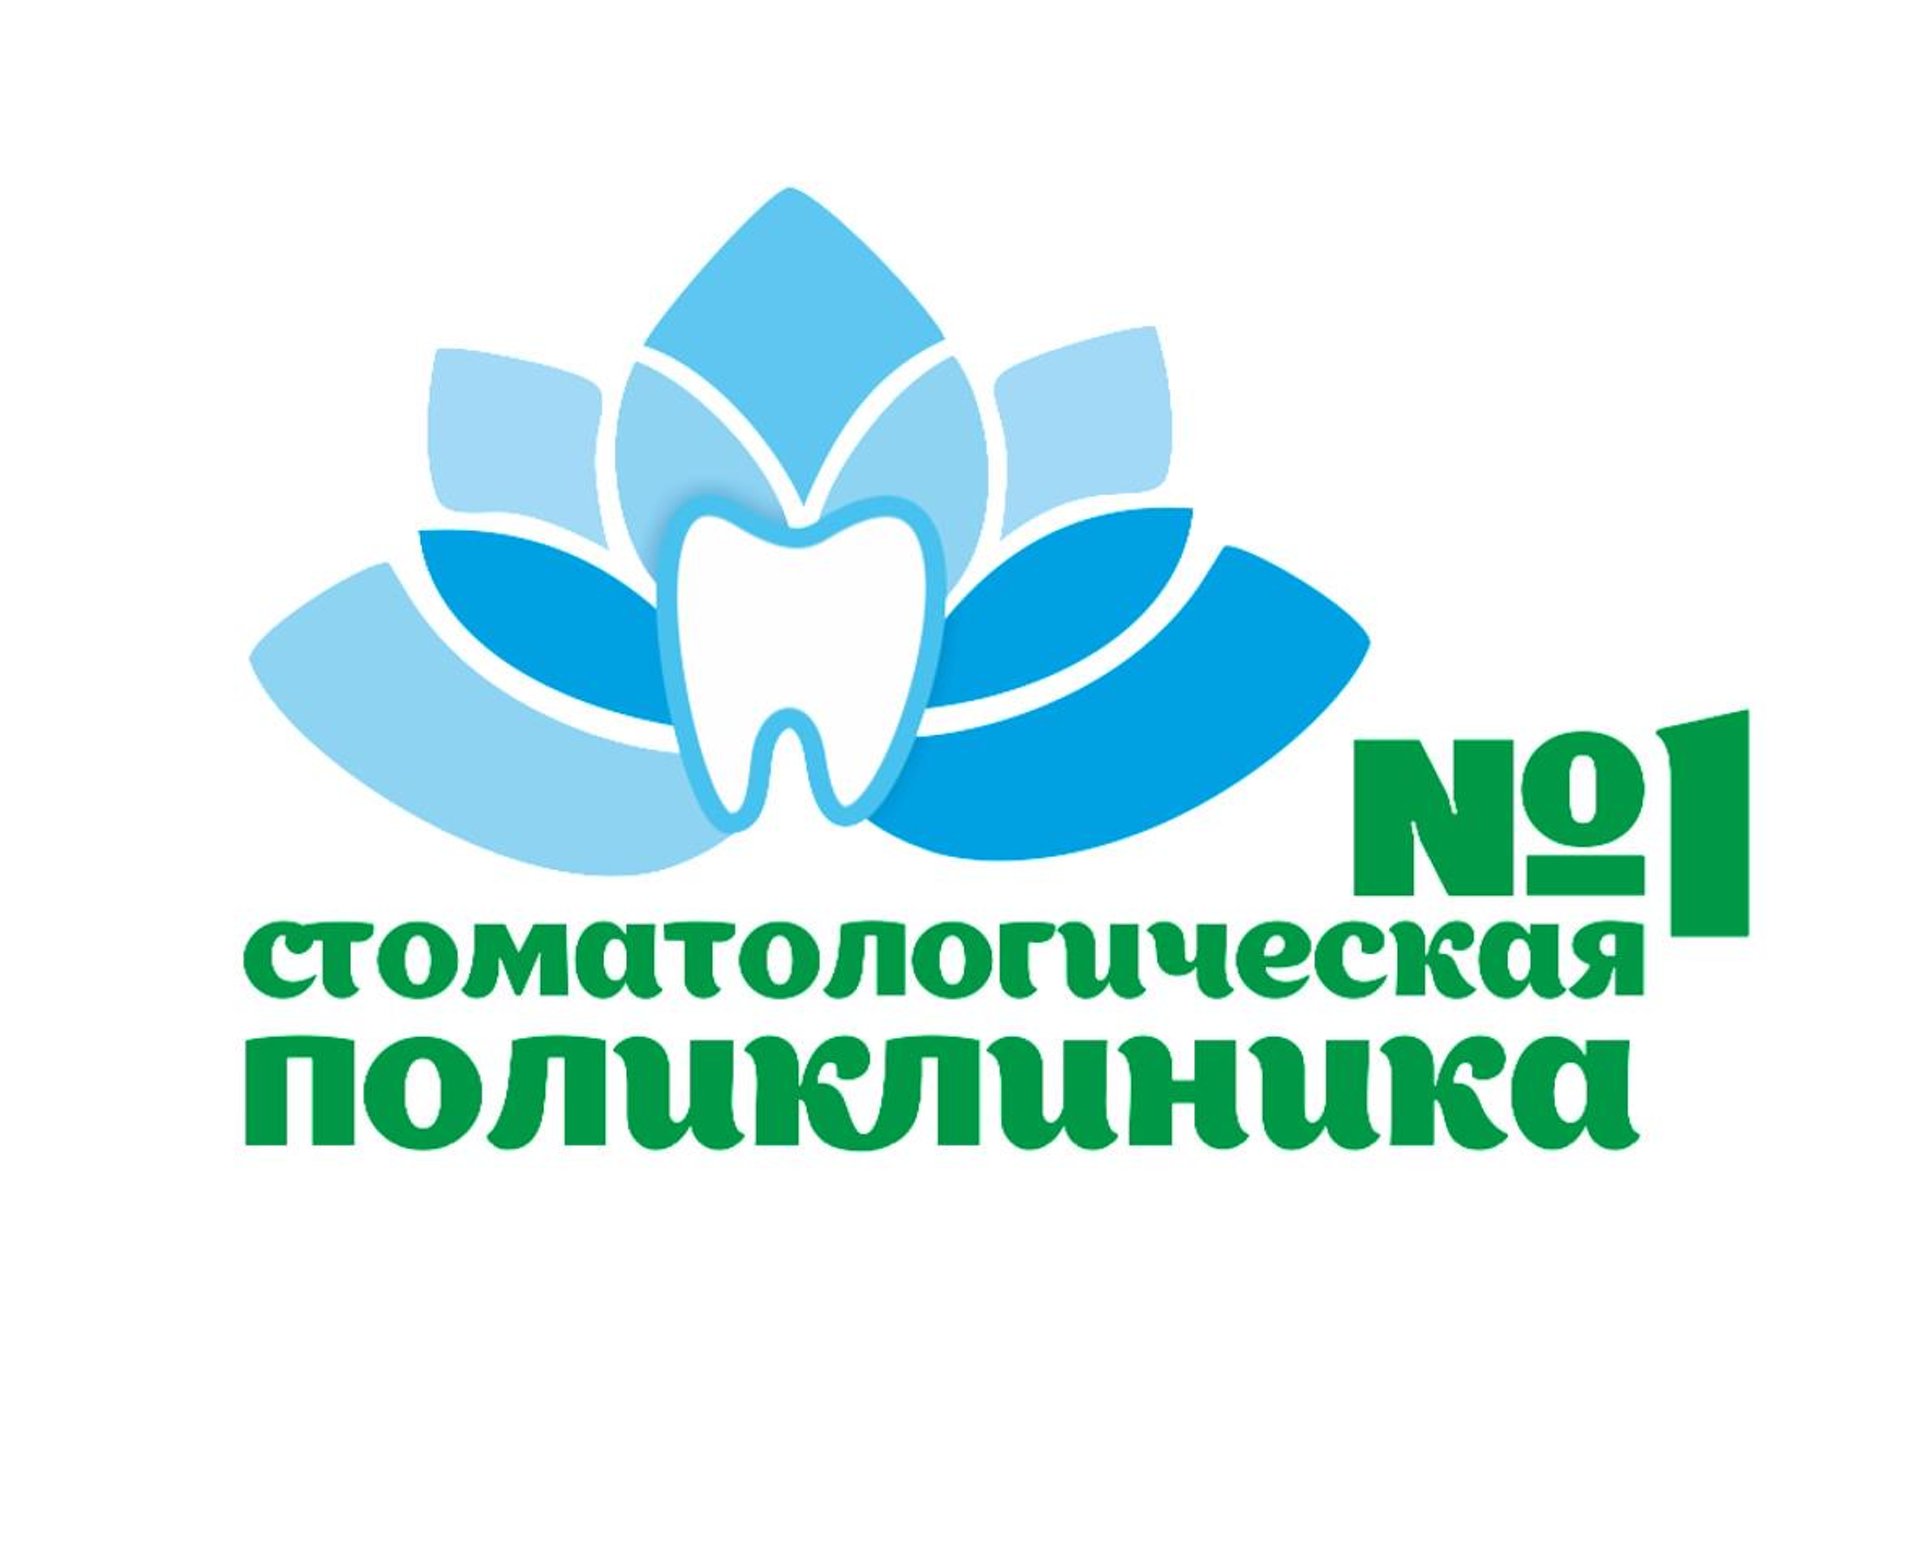 Дежурная стоматология в томске по полису поставить пломбу Томск Восточная